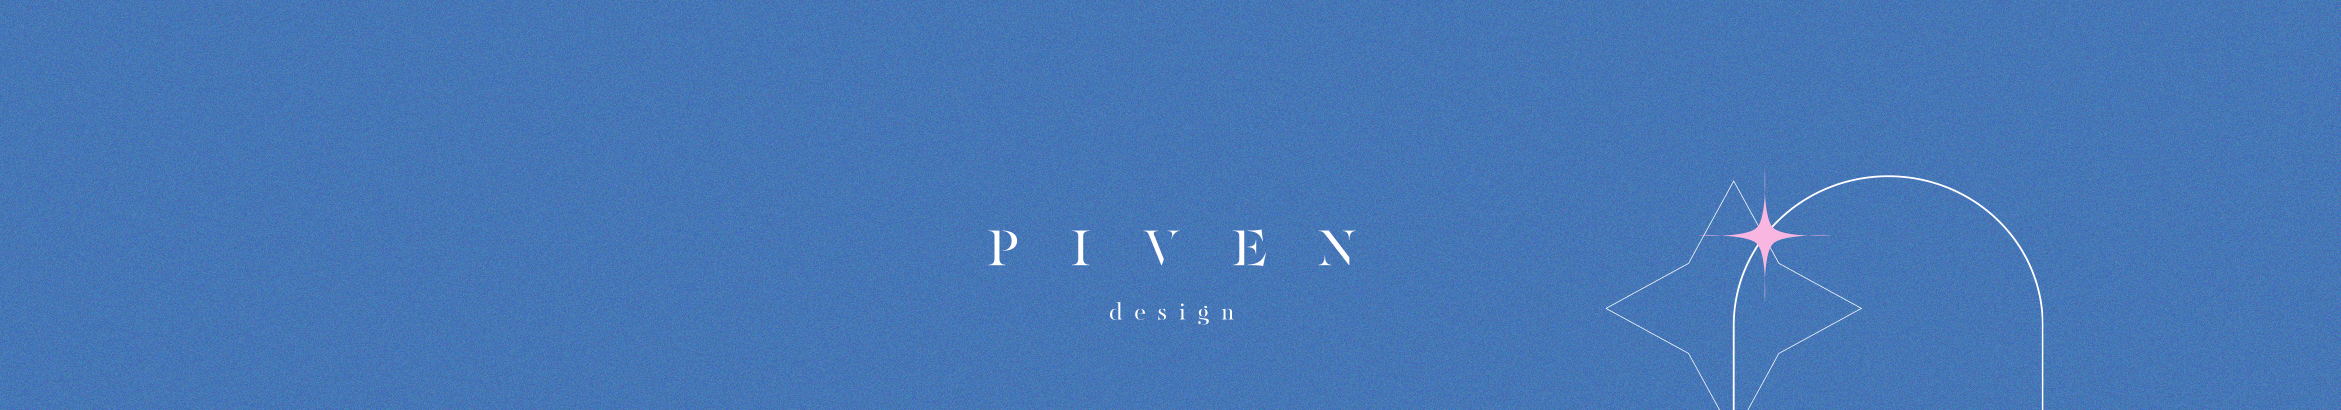 PIVEN design's profile banner